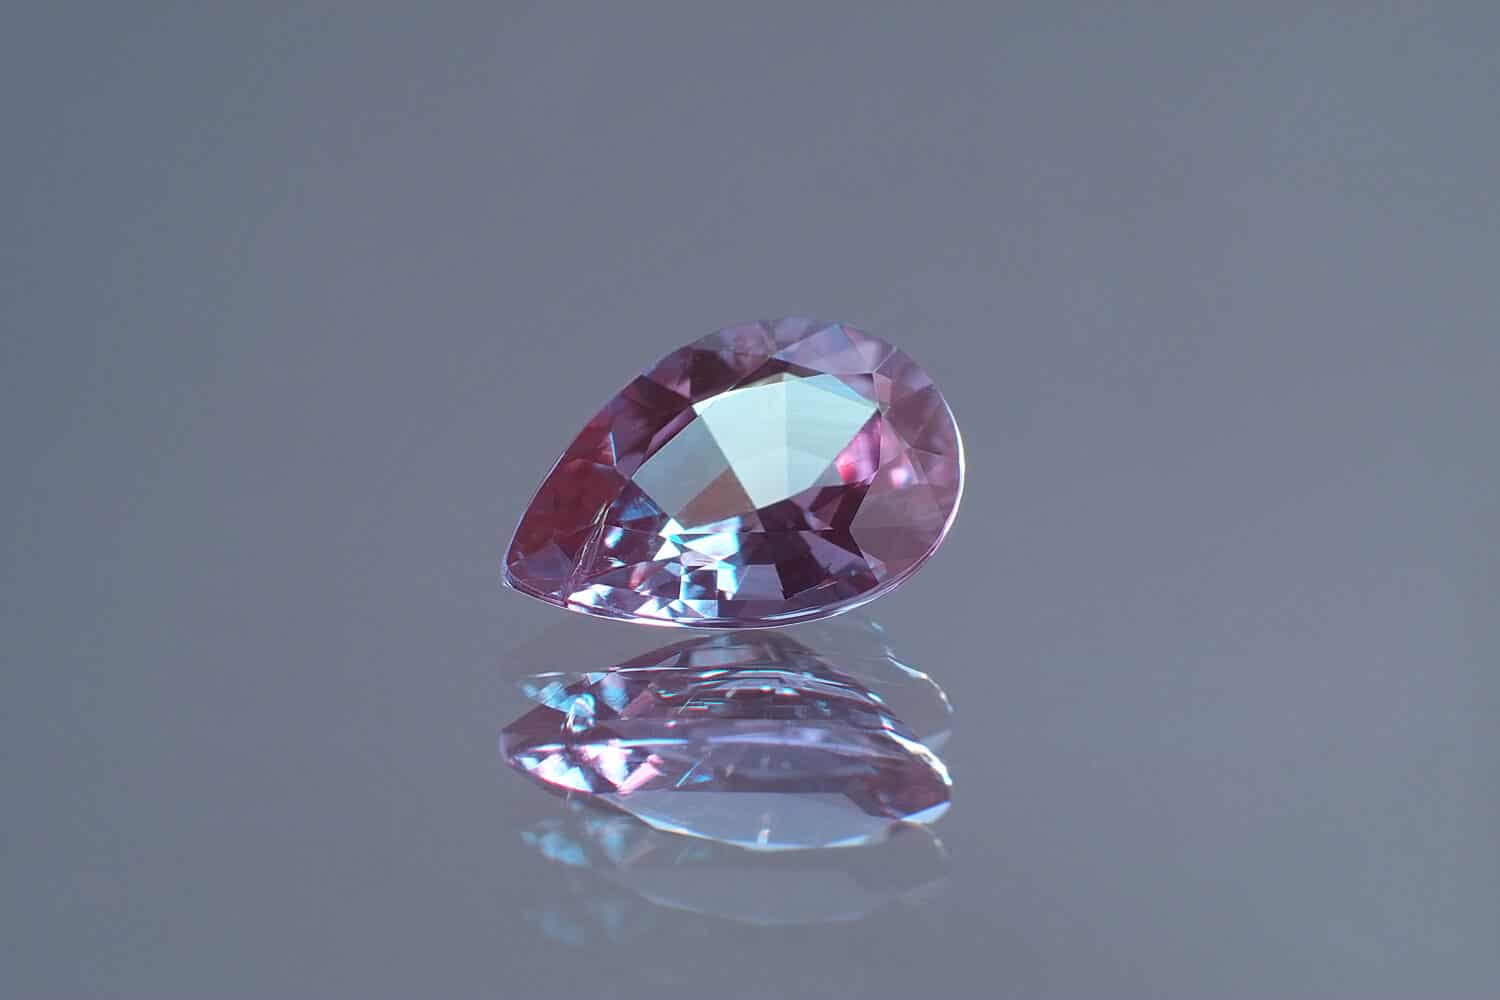 alexandrite Pear shape cut: teardrop